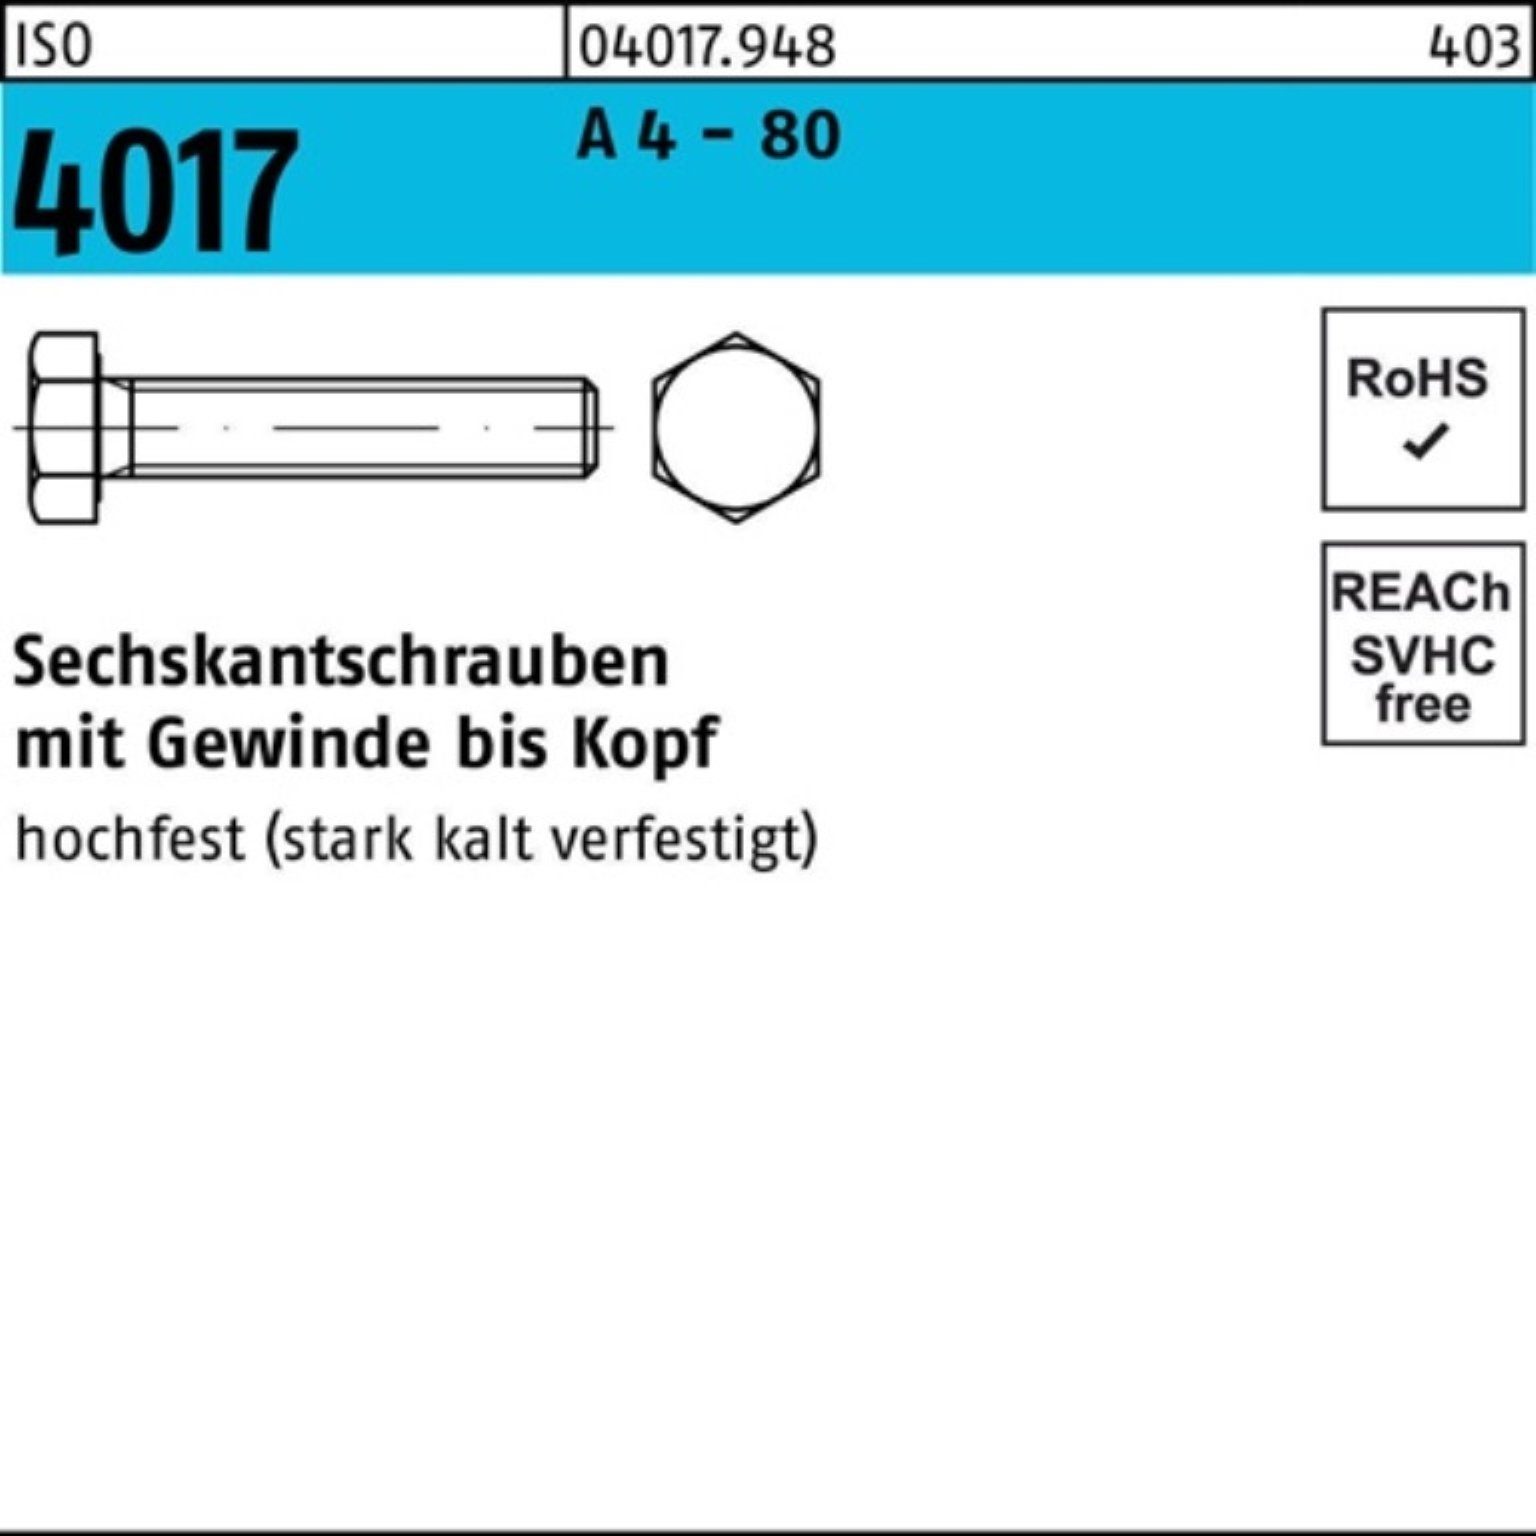 Bufab Sechskantschraube 100er Pack Sechskantschraube ISO 4017 VG M16x 25 A 4 - 80 50 Stück IS